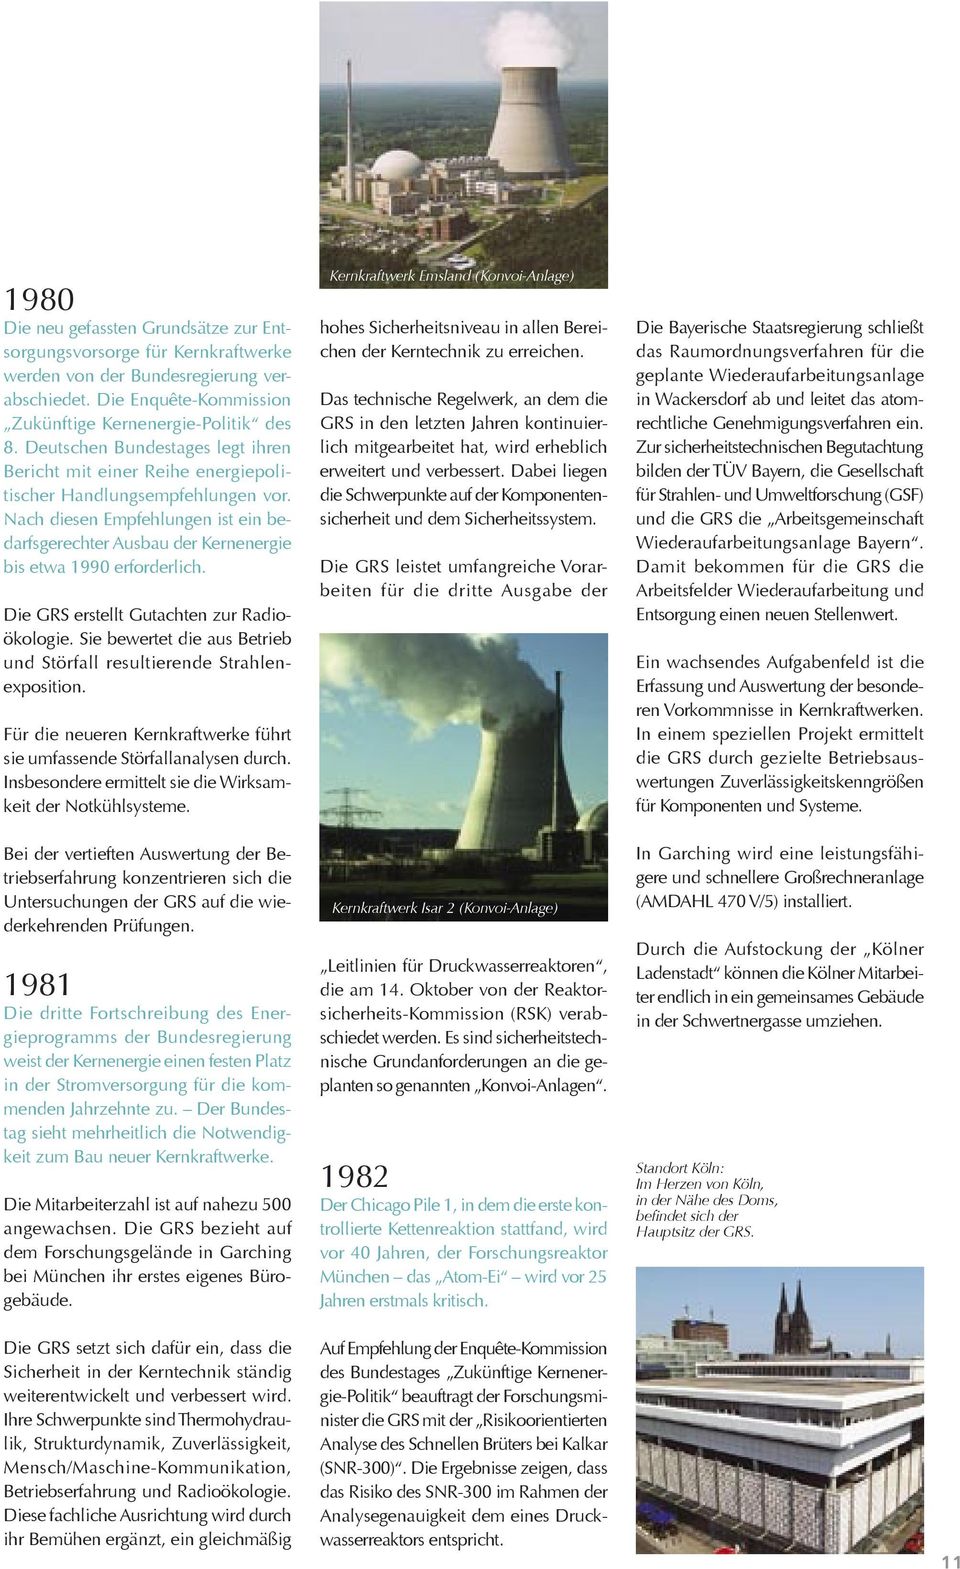 Nach diesen Empfehlungen ist ein bedarfsgerechter Ausbau der Kernenergie bis etwa 1990 erforderlich. Die GRS erstellt Gutachten zur Radioökologie.